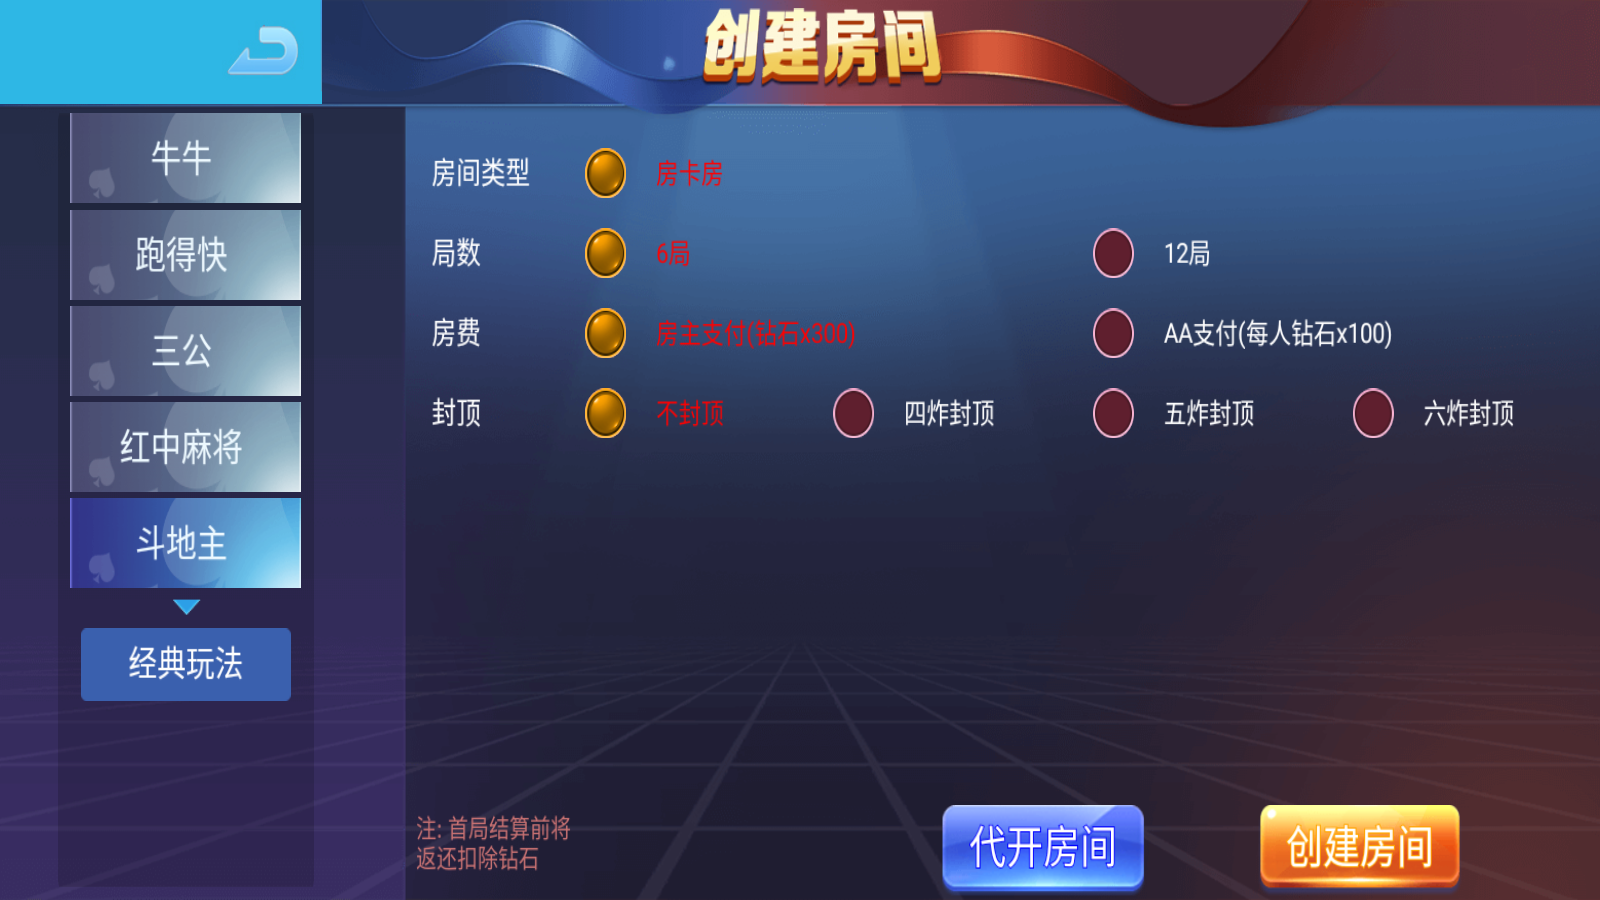 新版五游大联盟运营版棋牌组件 UI美观大方插图5